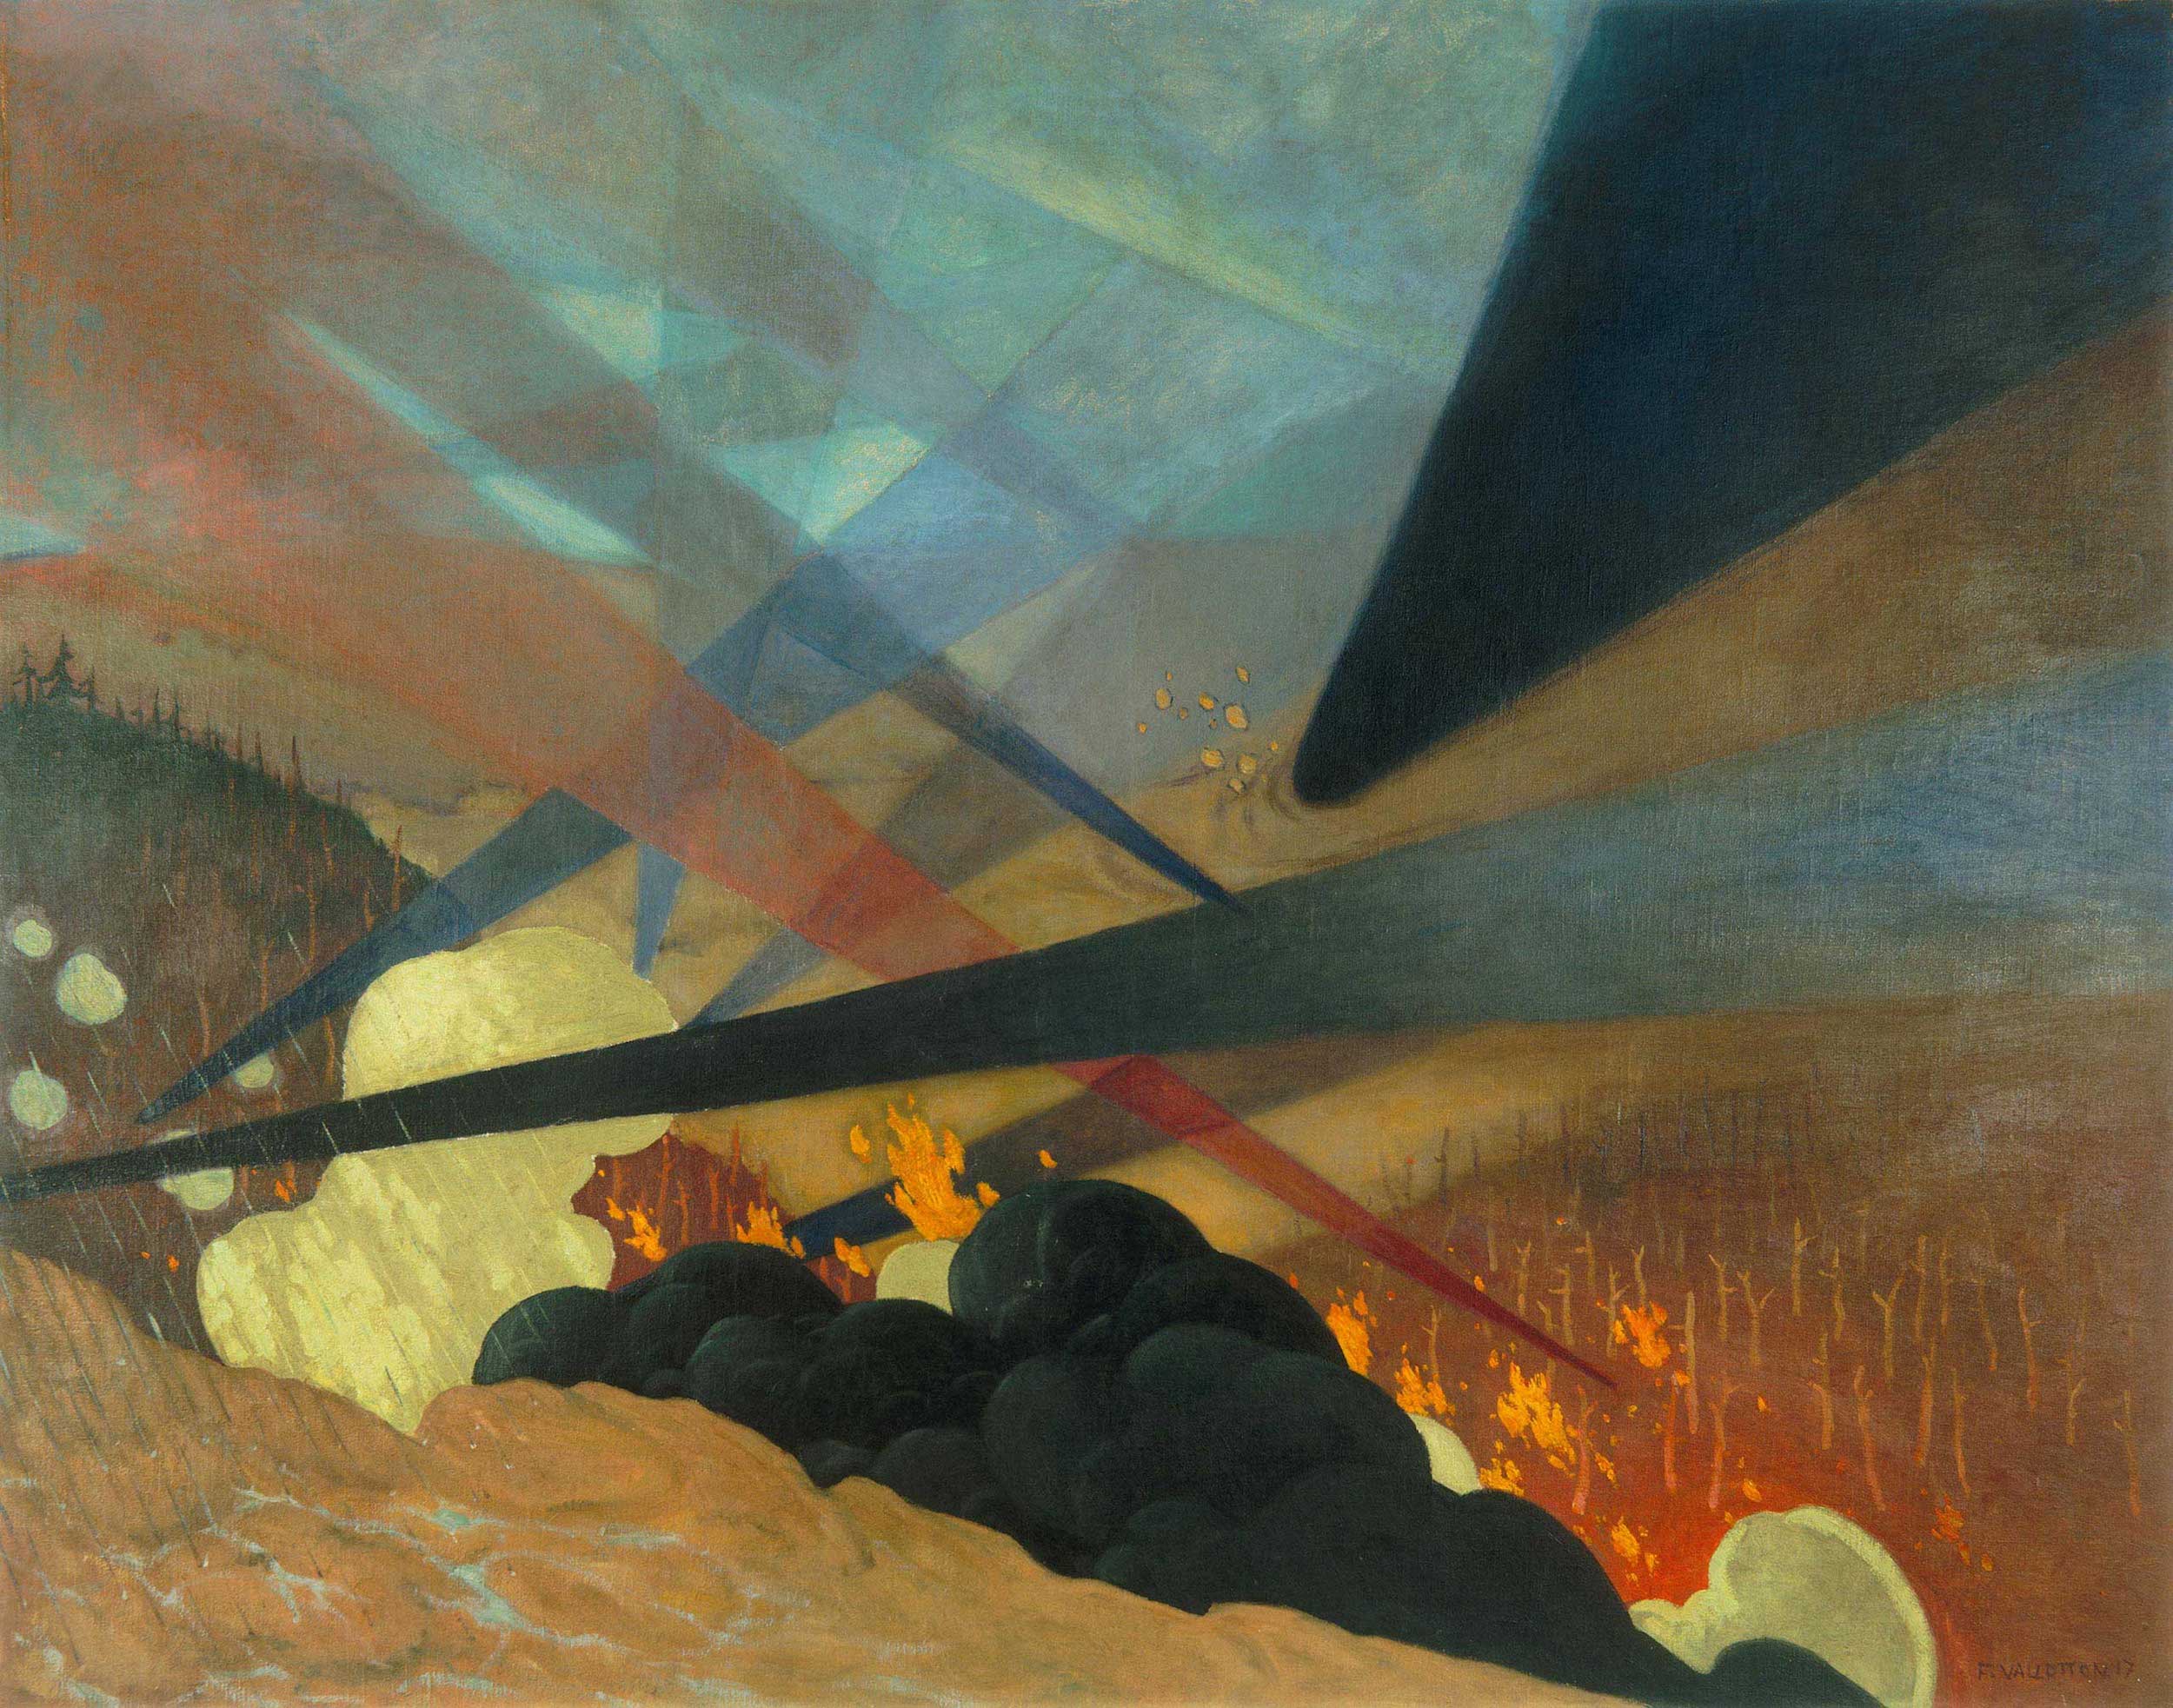 Verdun by Félix Vallotton - 1917 